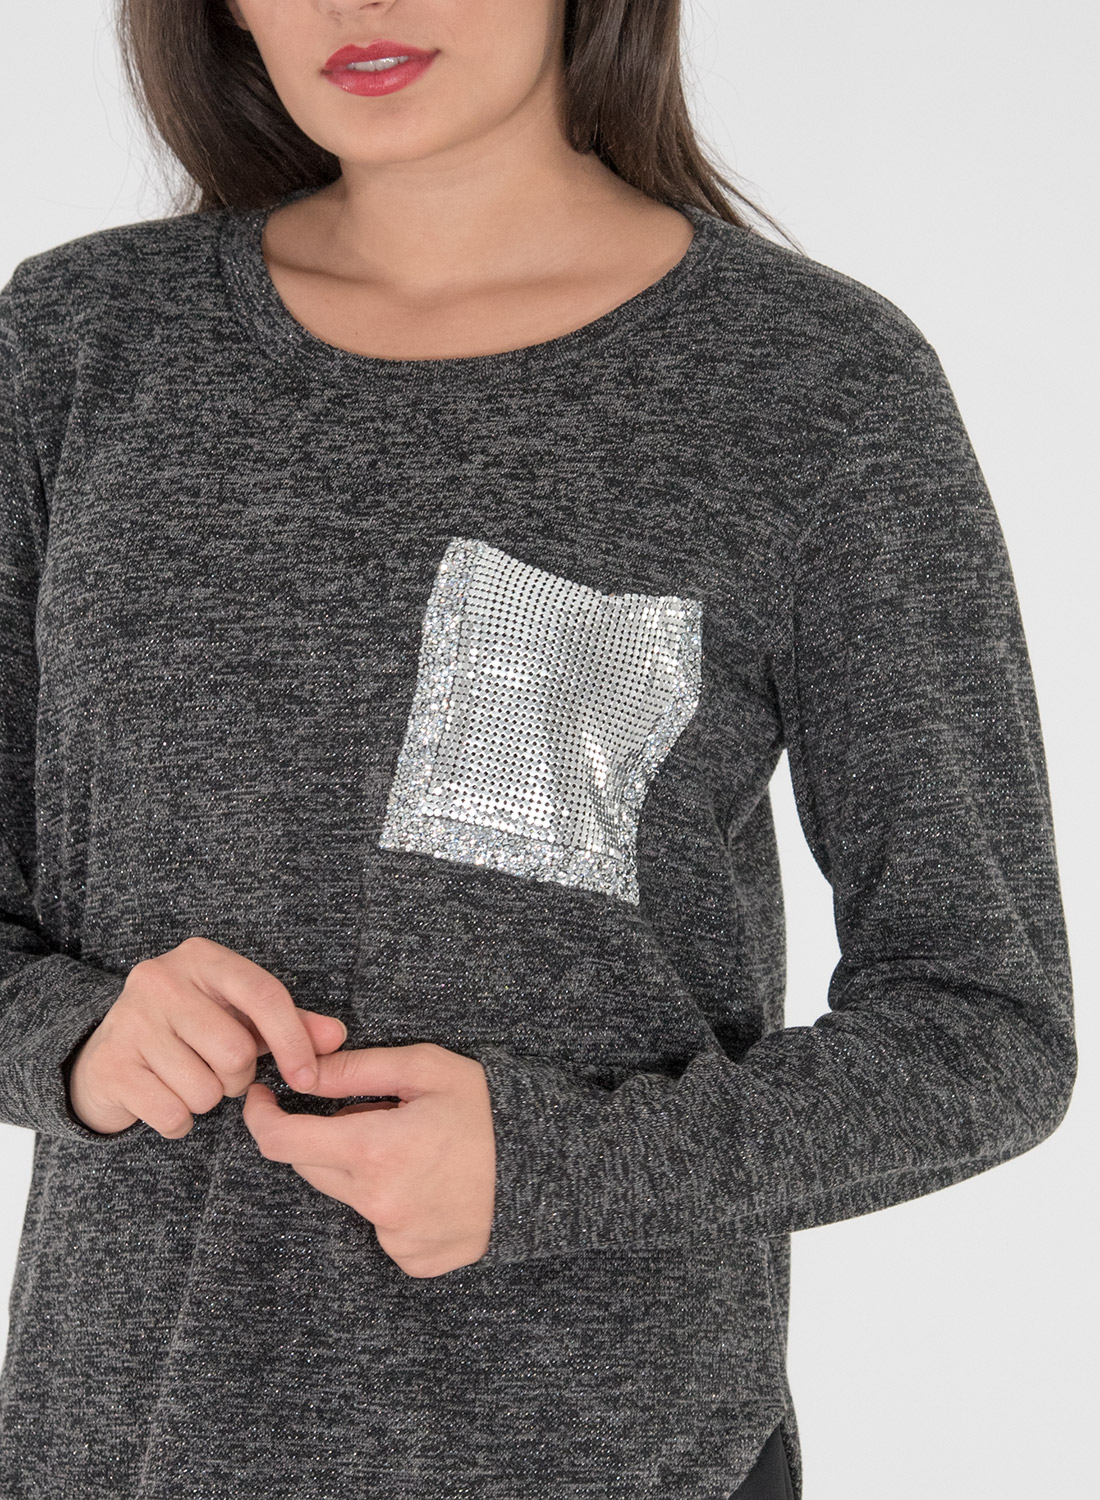 Νεανική δίχρωμη μπλούζα με διακοσμητική τσέπη